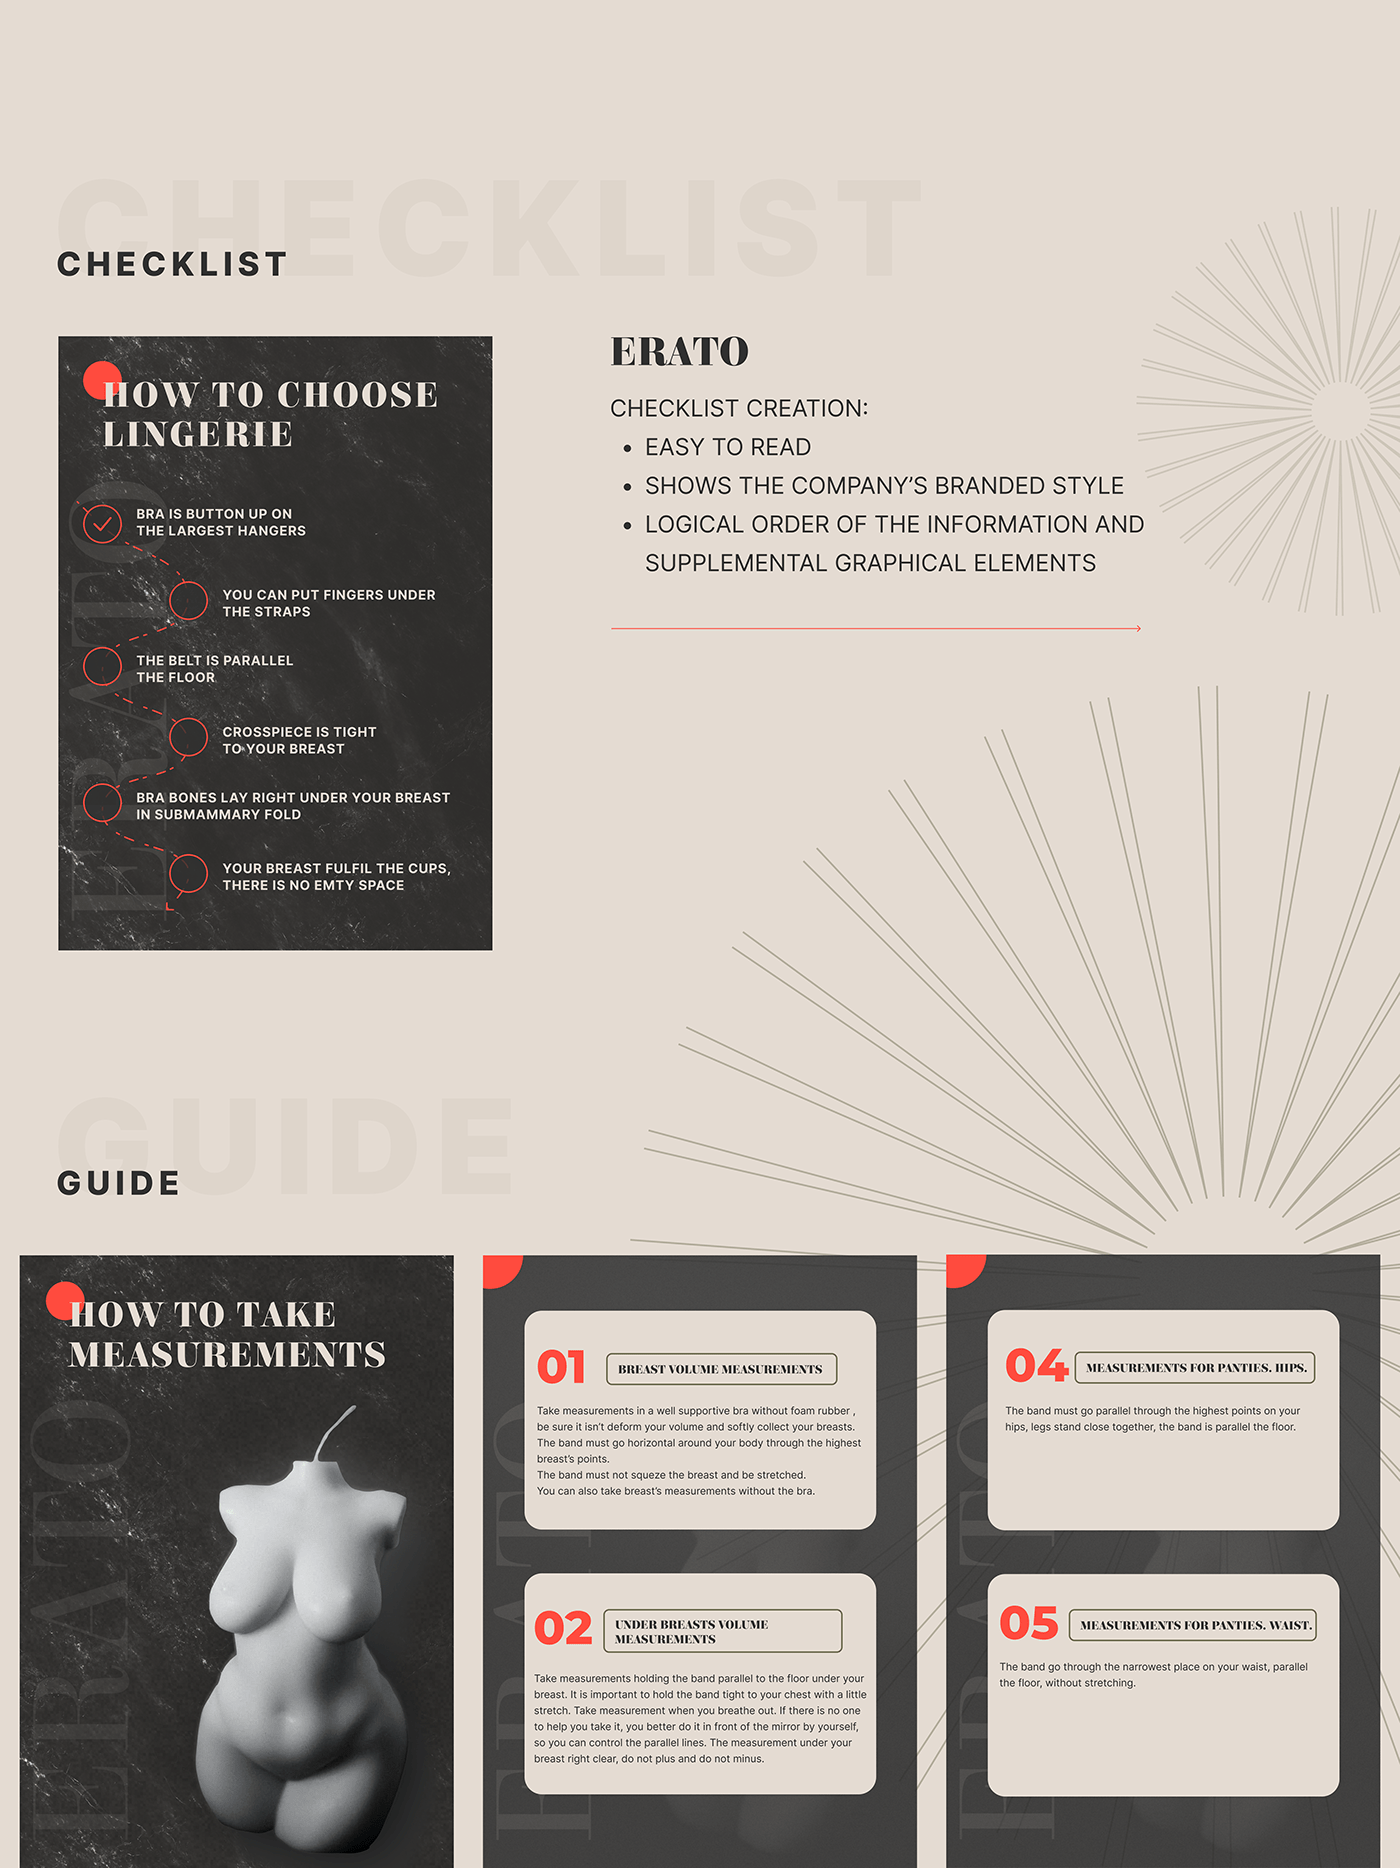 brandedstyle checklist design Guide landing page lingerie Onlineshop tilda ux Website